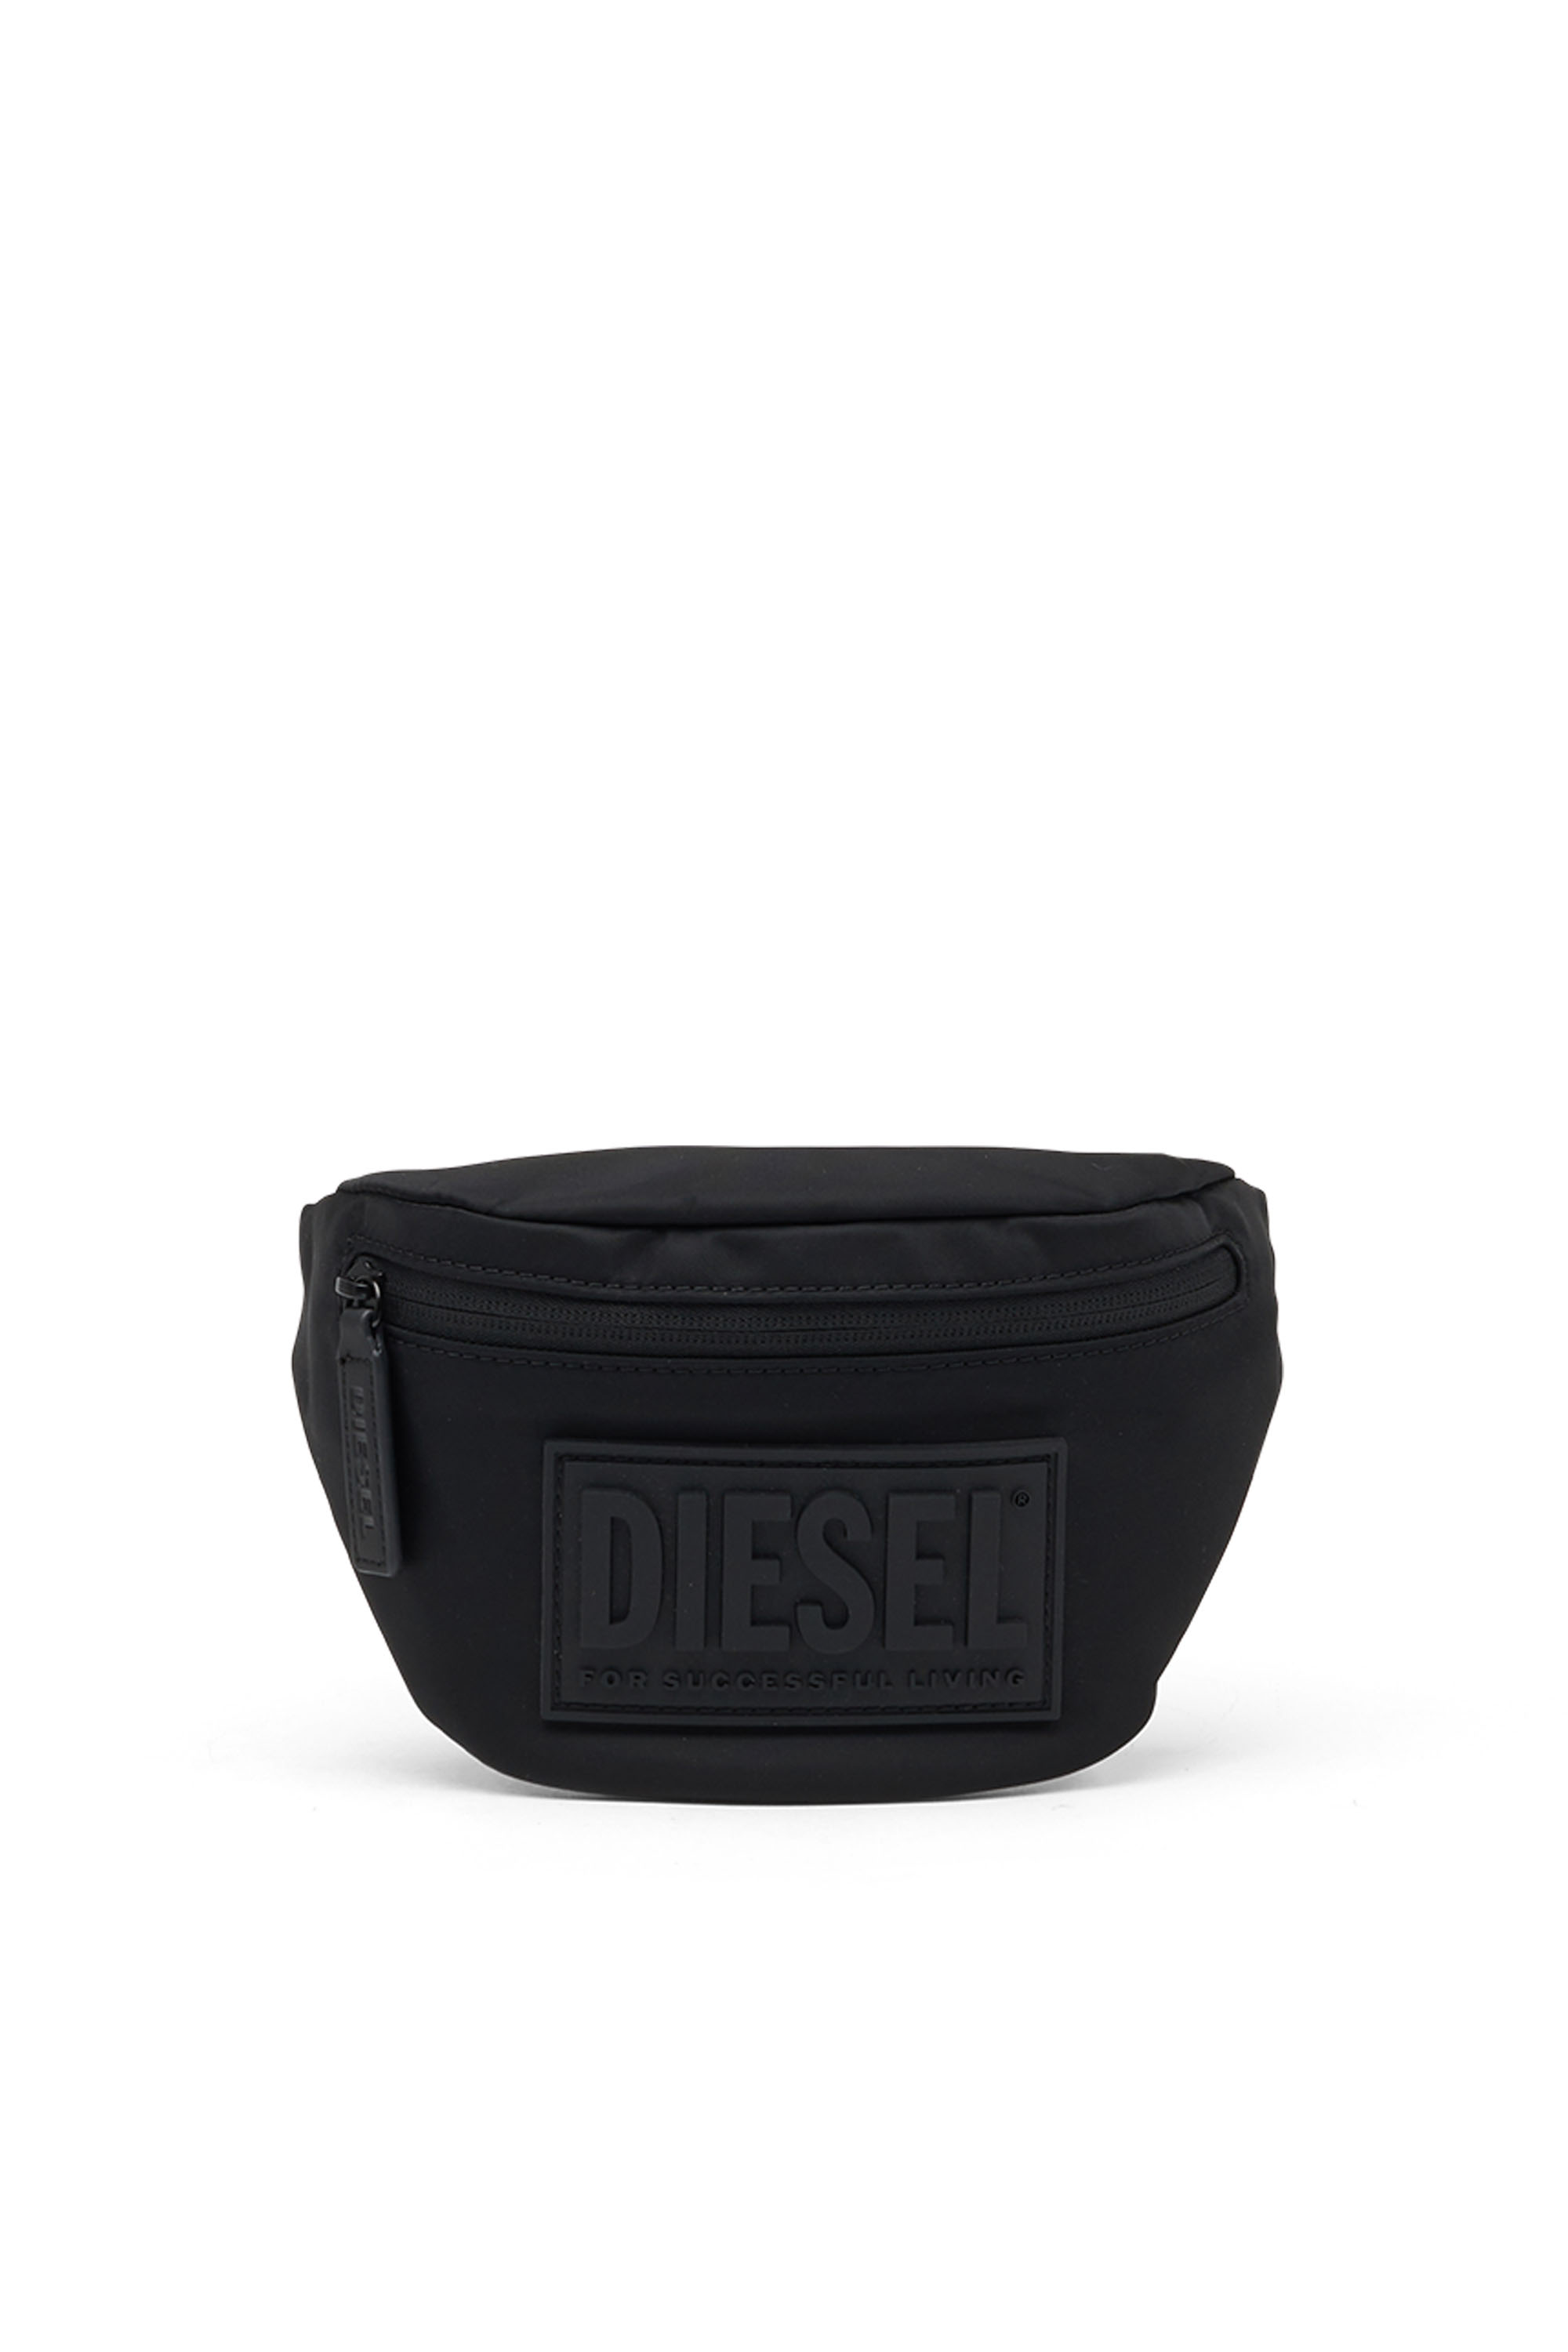 Diesel - BELTB55, Black - Image 1